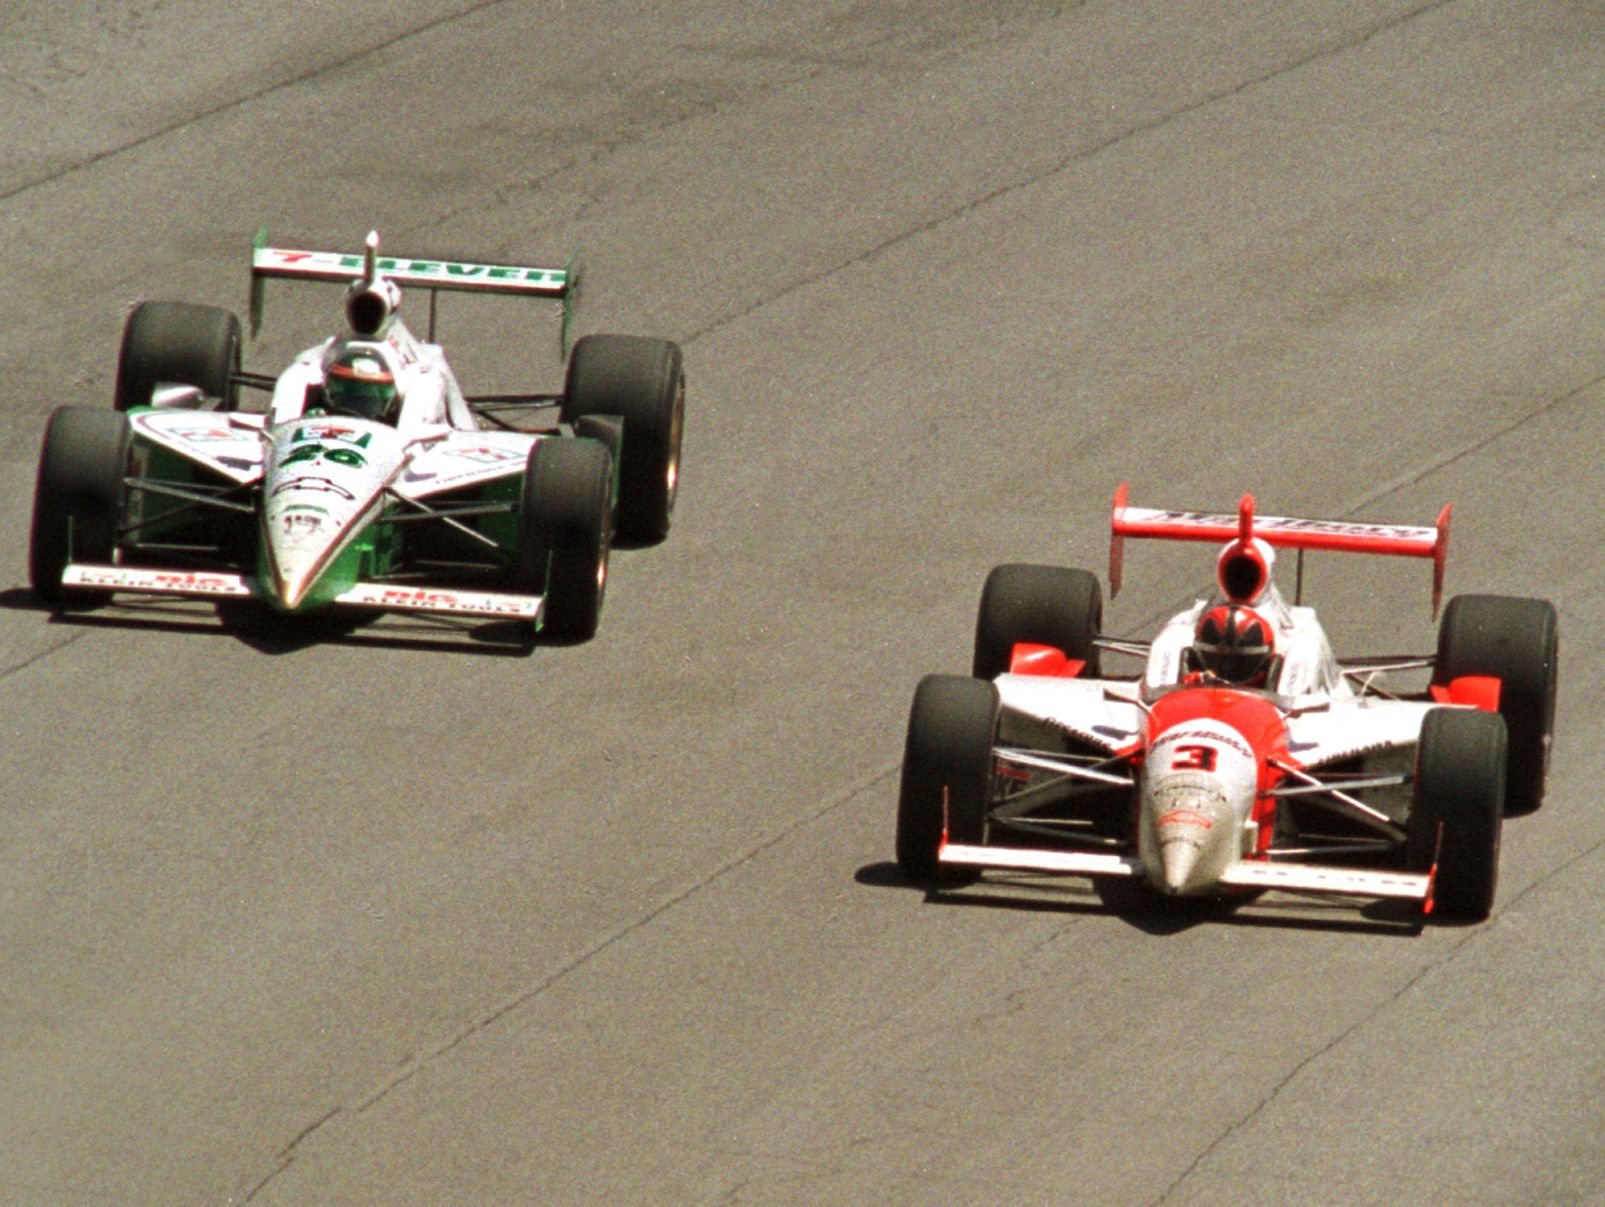 LE PASSAGE DISPUTE...(de gauche à droite) Paul Tracy, dans la voiture numéro 26, dépasse (à l'extérieur) le numéro 3, Helio Castroneves...A la fin de la course.